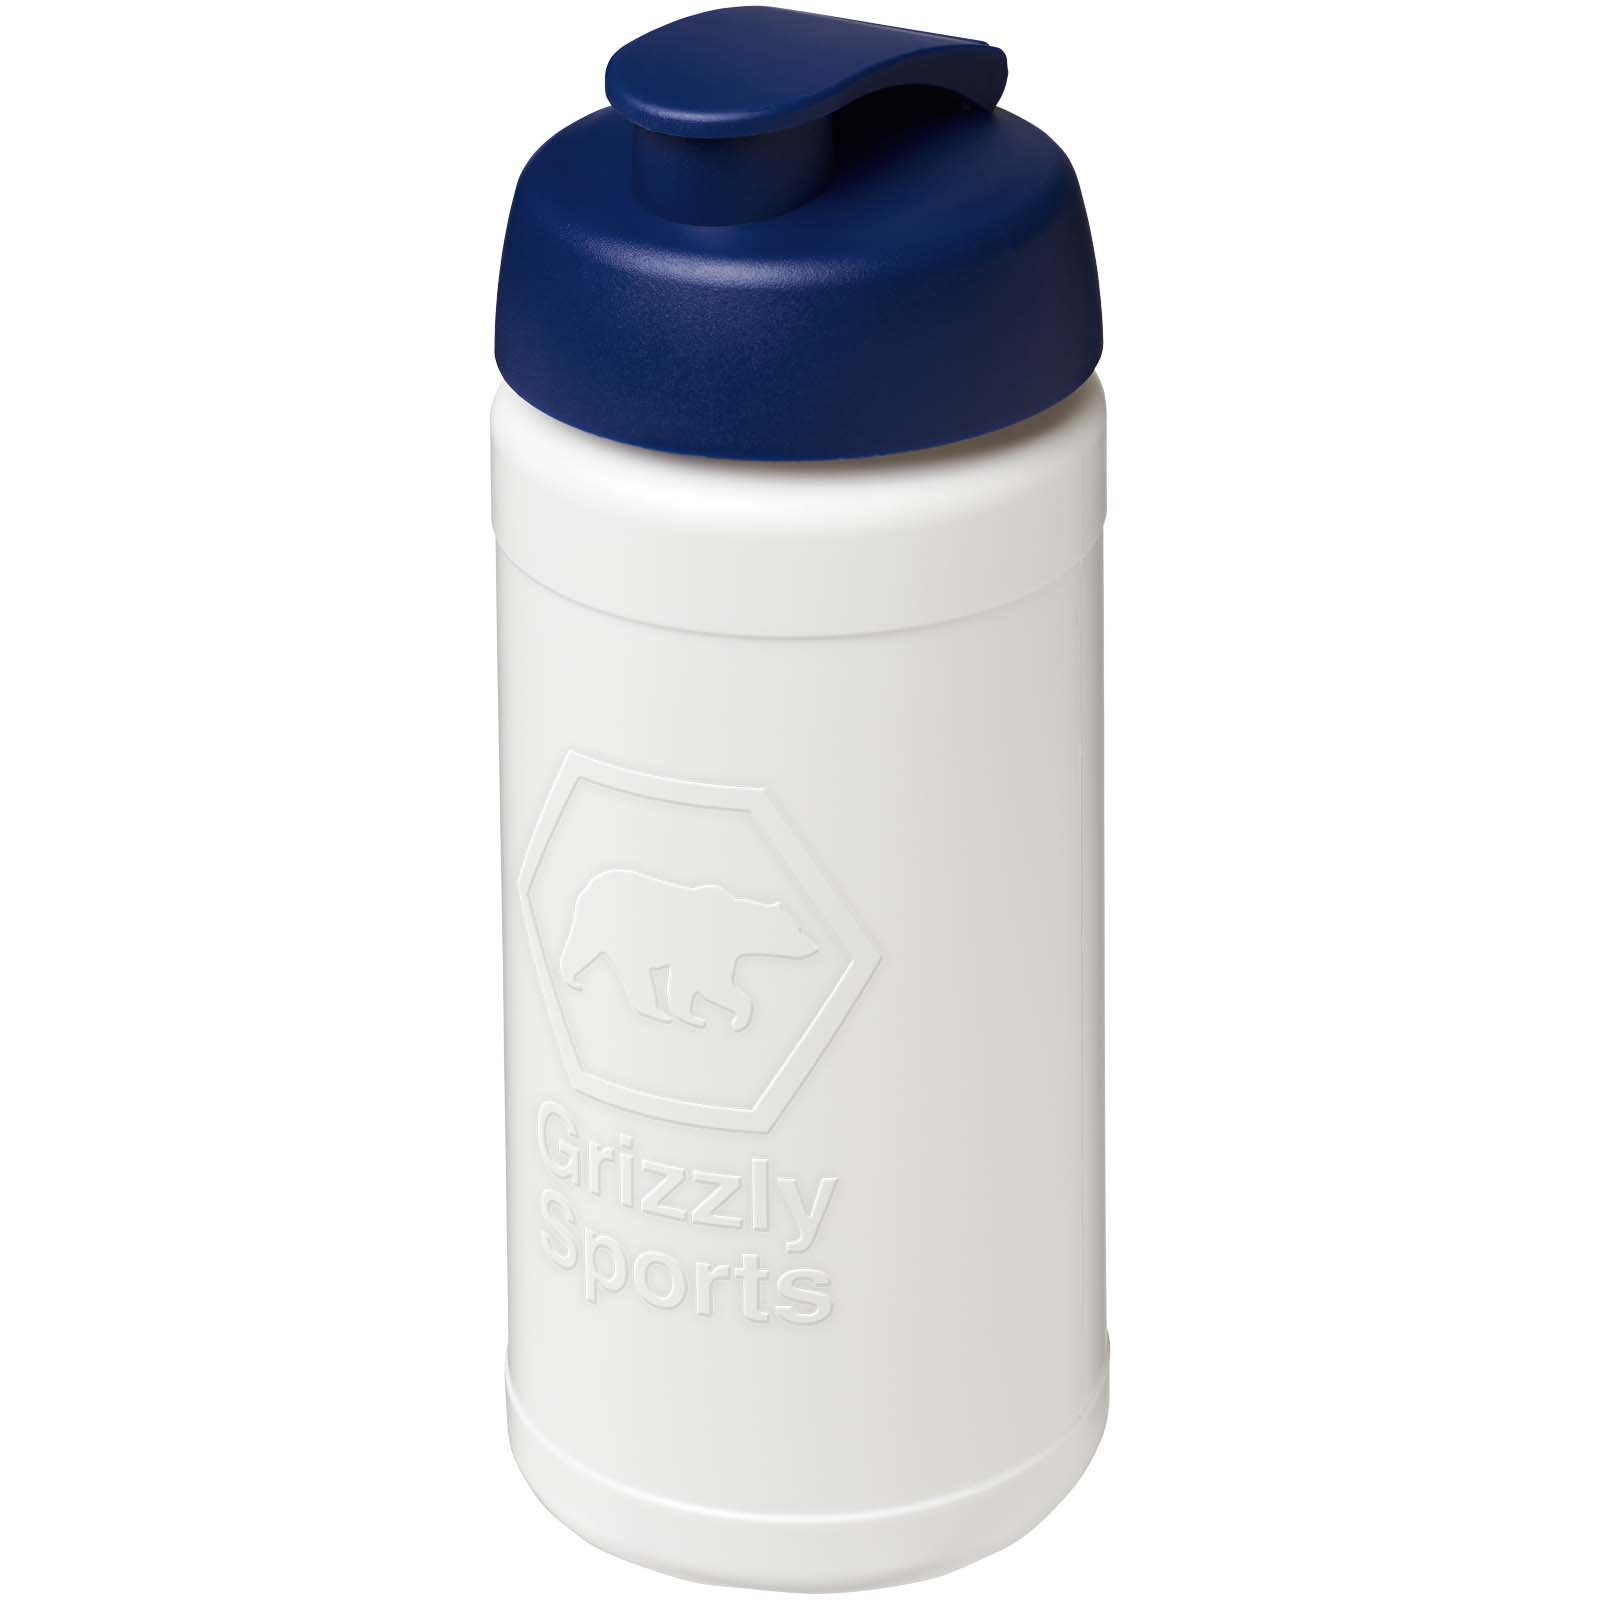 Drinkware - Baseline Rise 500 ml sport bottle with flip lid